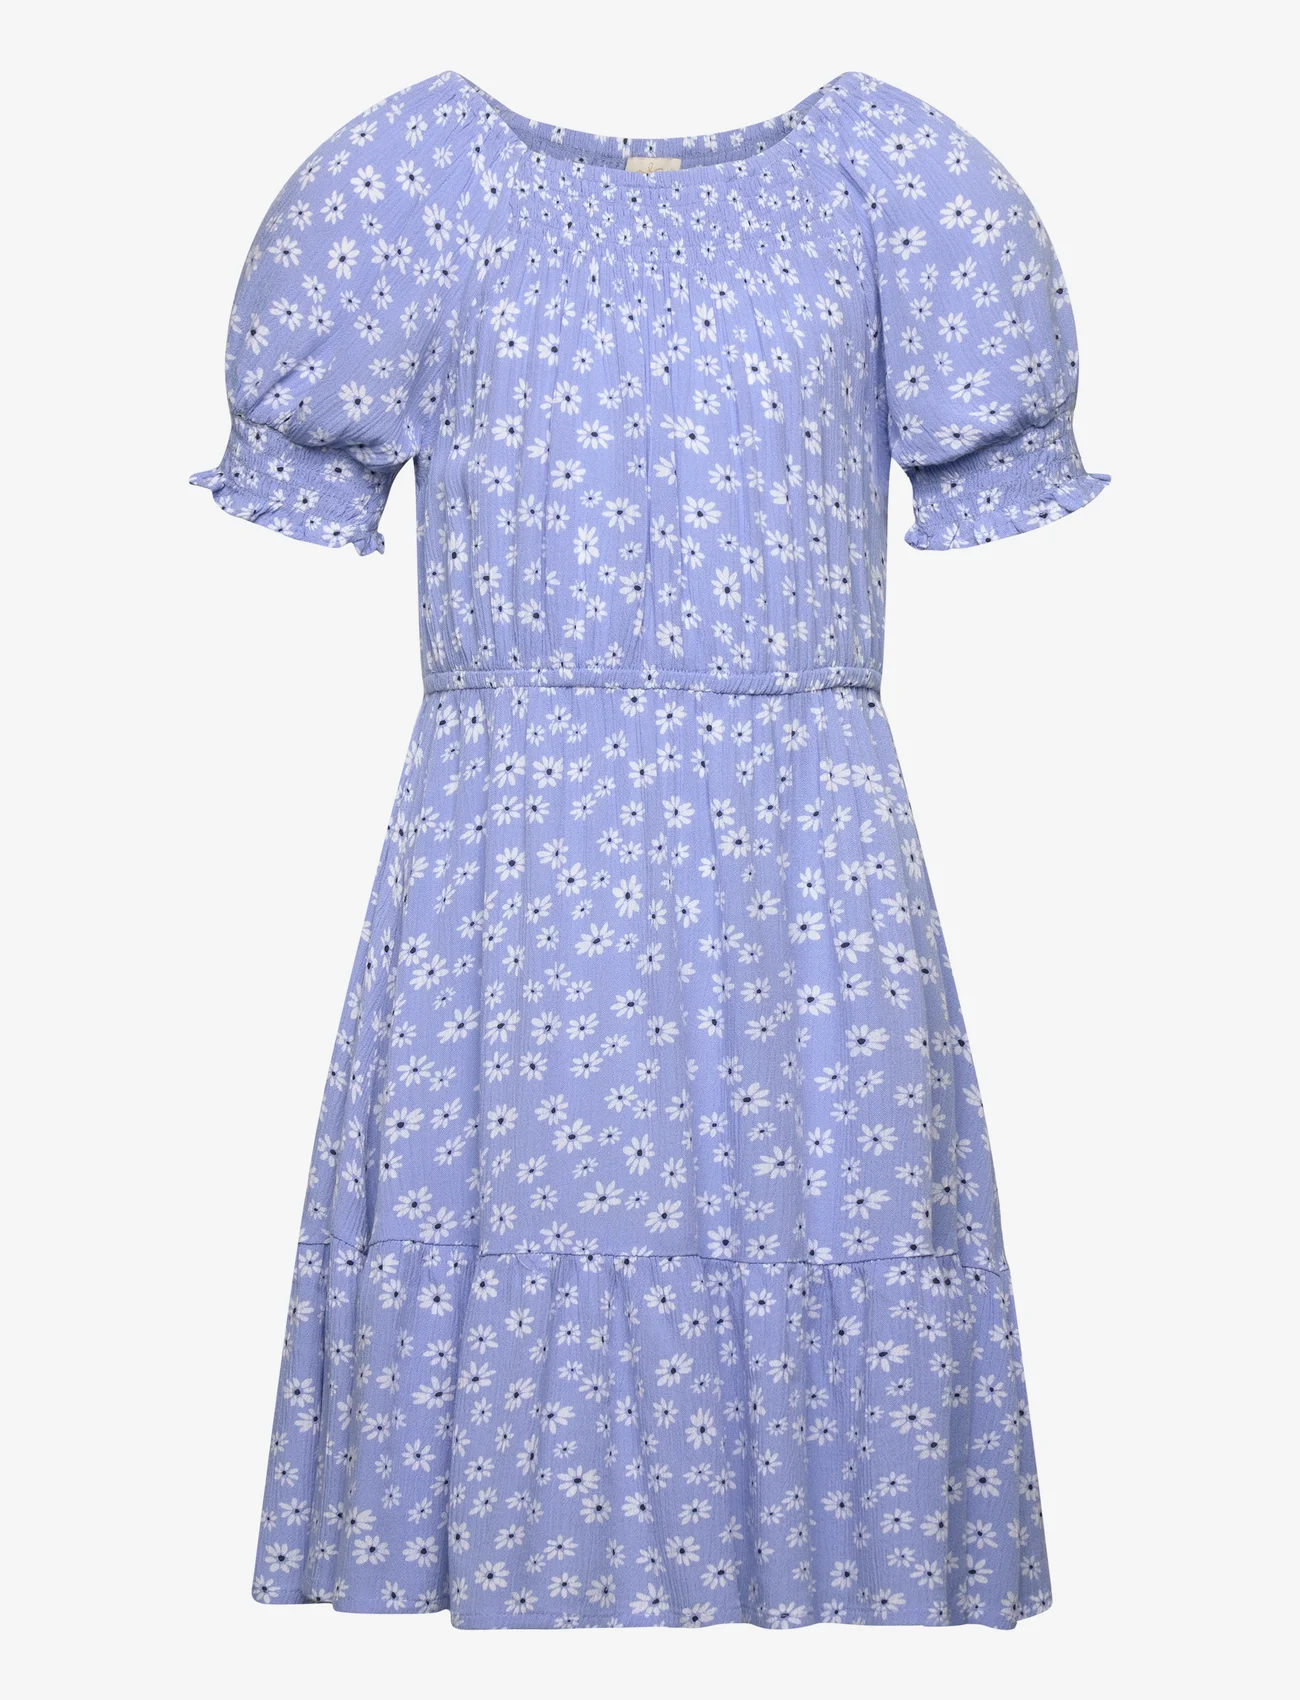 Creamie - Dress Flower - kurzärmelige freizeitkleider - bel air blue - 0